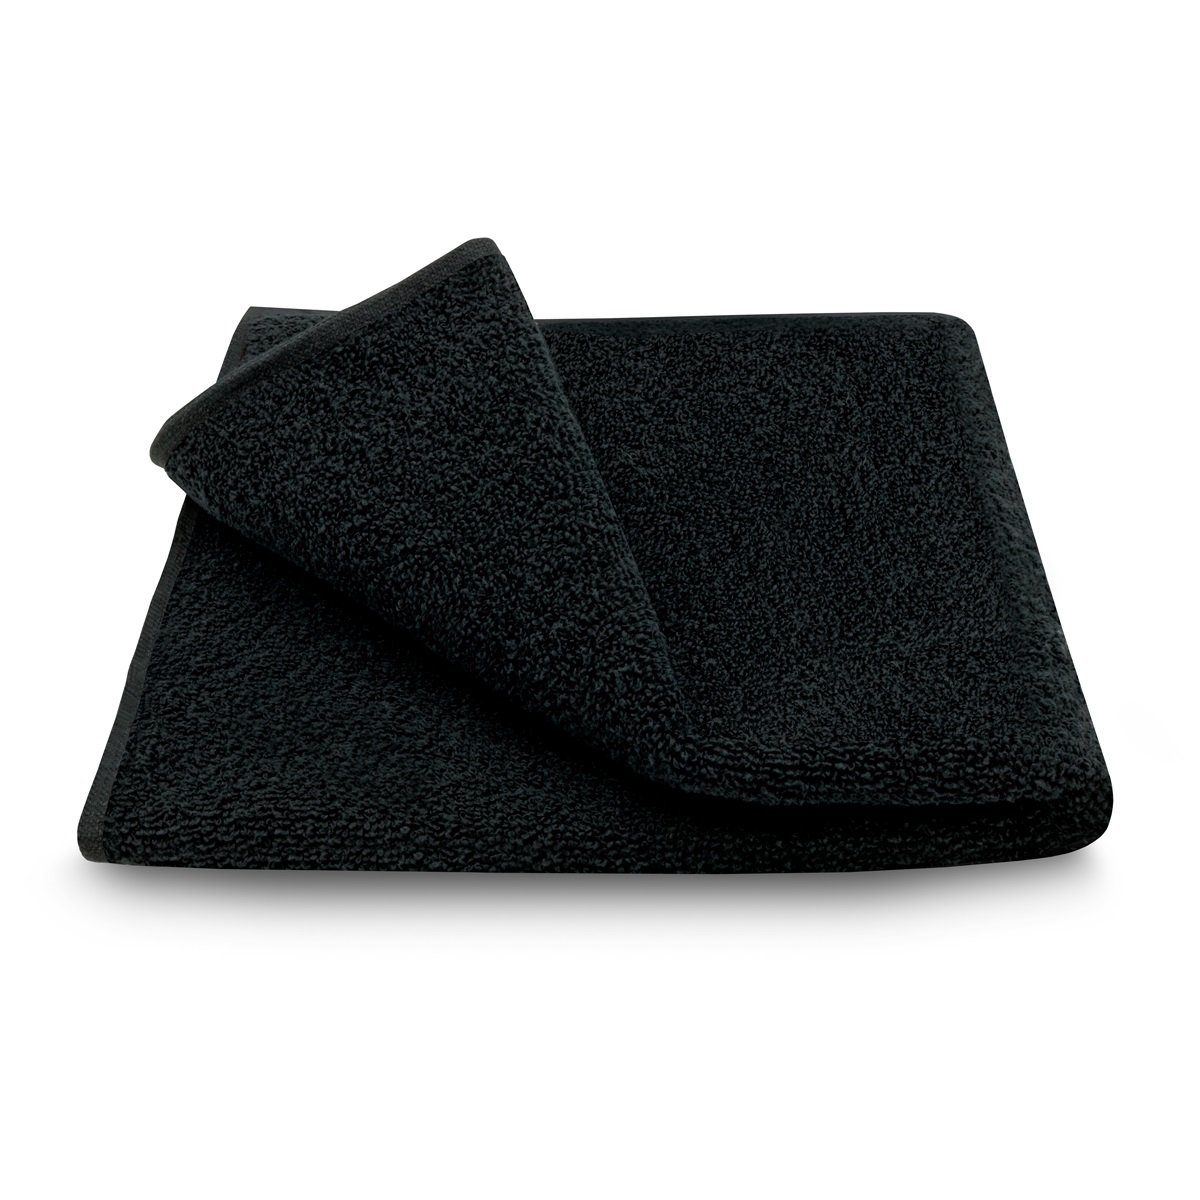 ARLI Handtuch 8 anthrazit Baumwolle Rohstoff + schwarz Design Frottier Set modern schlicht praktisch x 8 100% Serie aus 4 elegant (8-tlg) Set Handtücher mit Stück, hochwertigem Handtuchaufhänger klassischer 4 Handtuch